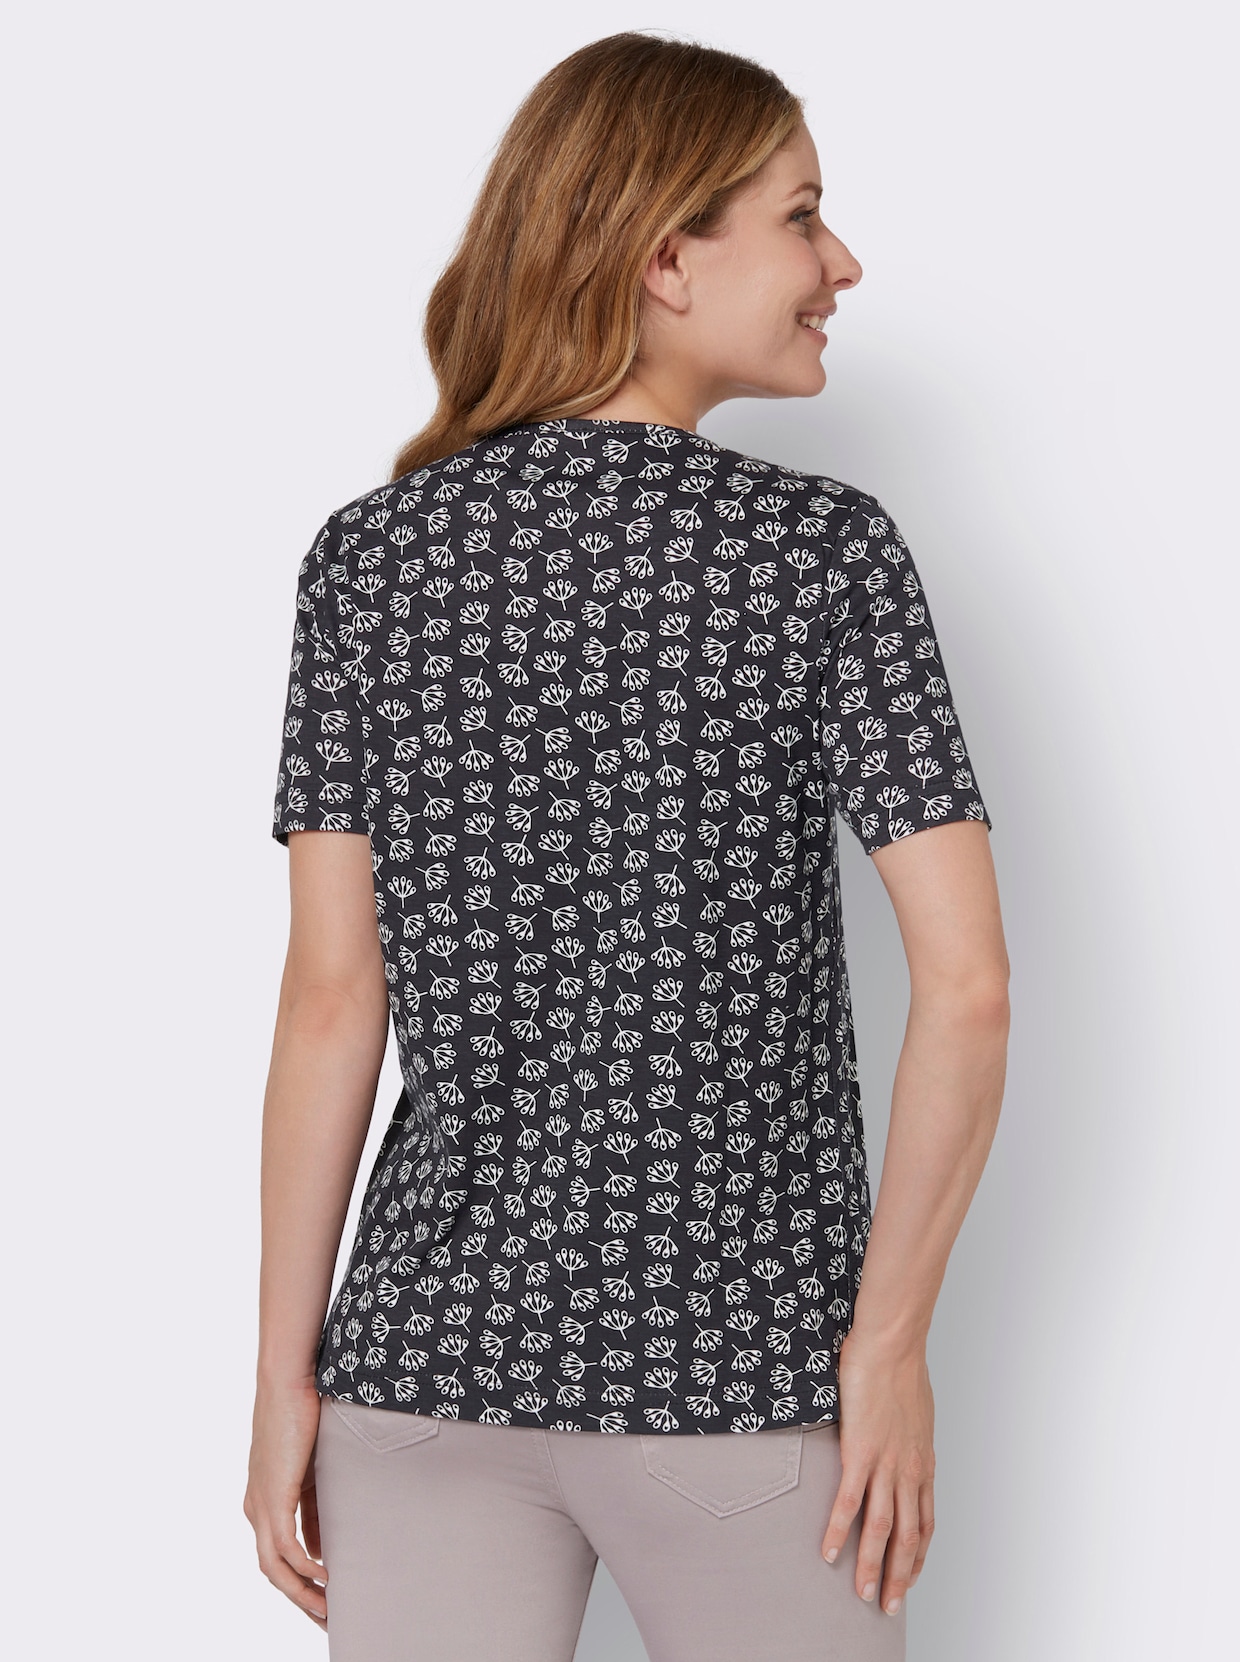 Bedrukt shirt - marine/ecru geprint